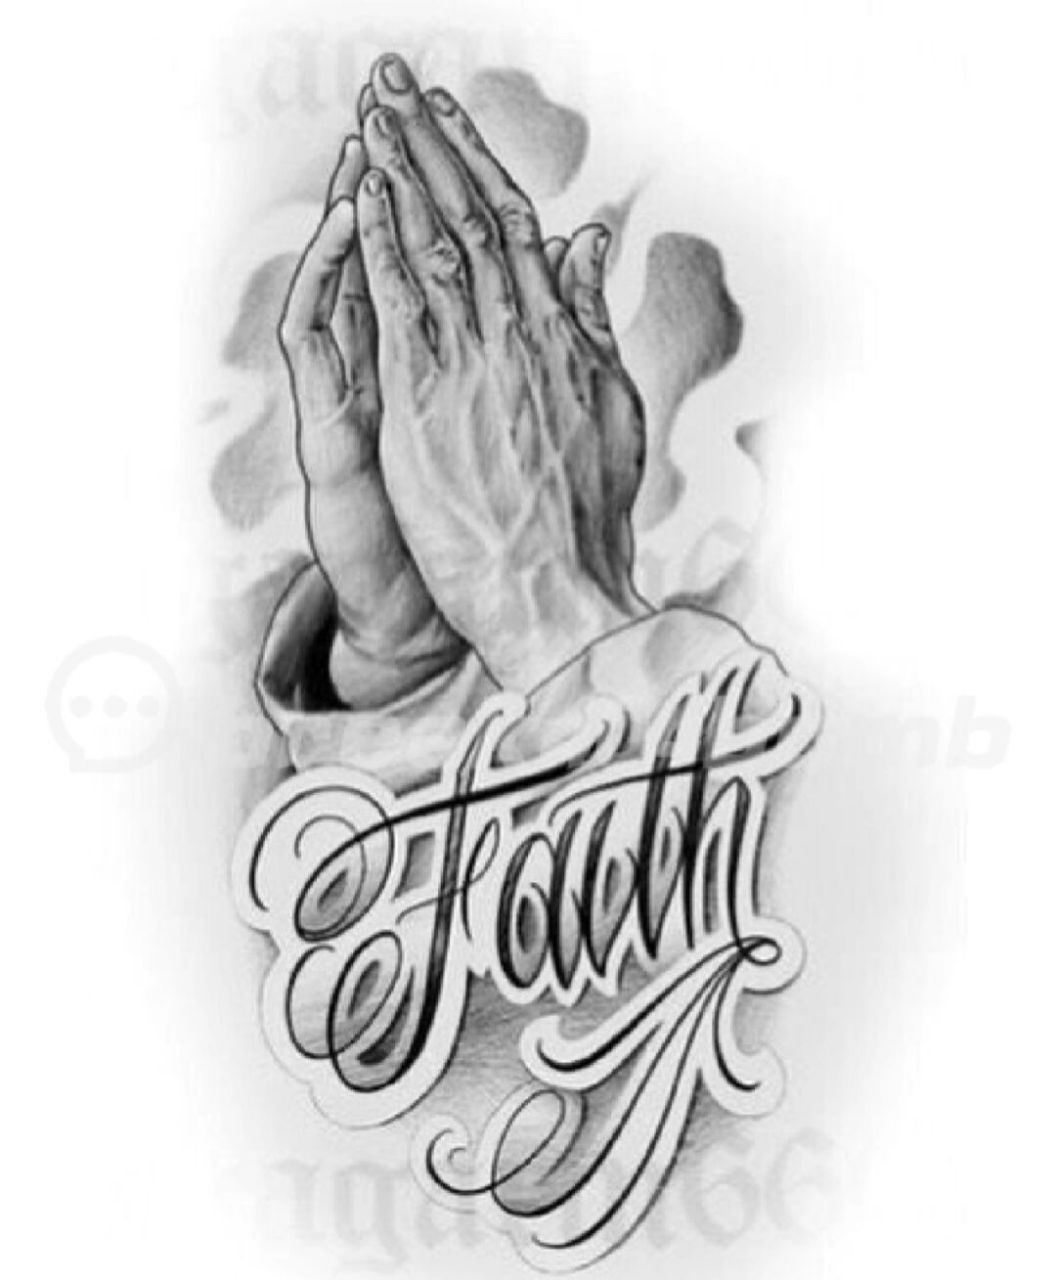 祈祷之手纹身寓意图片